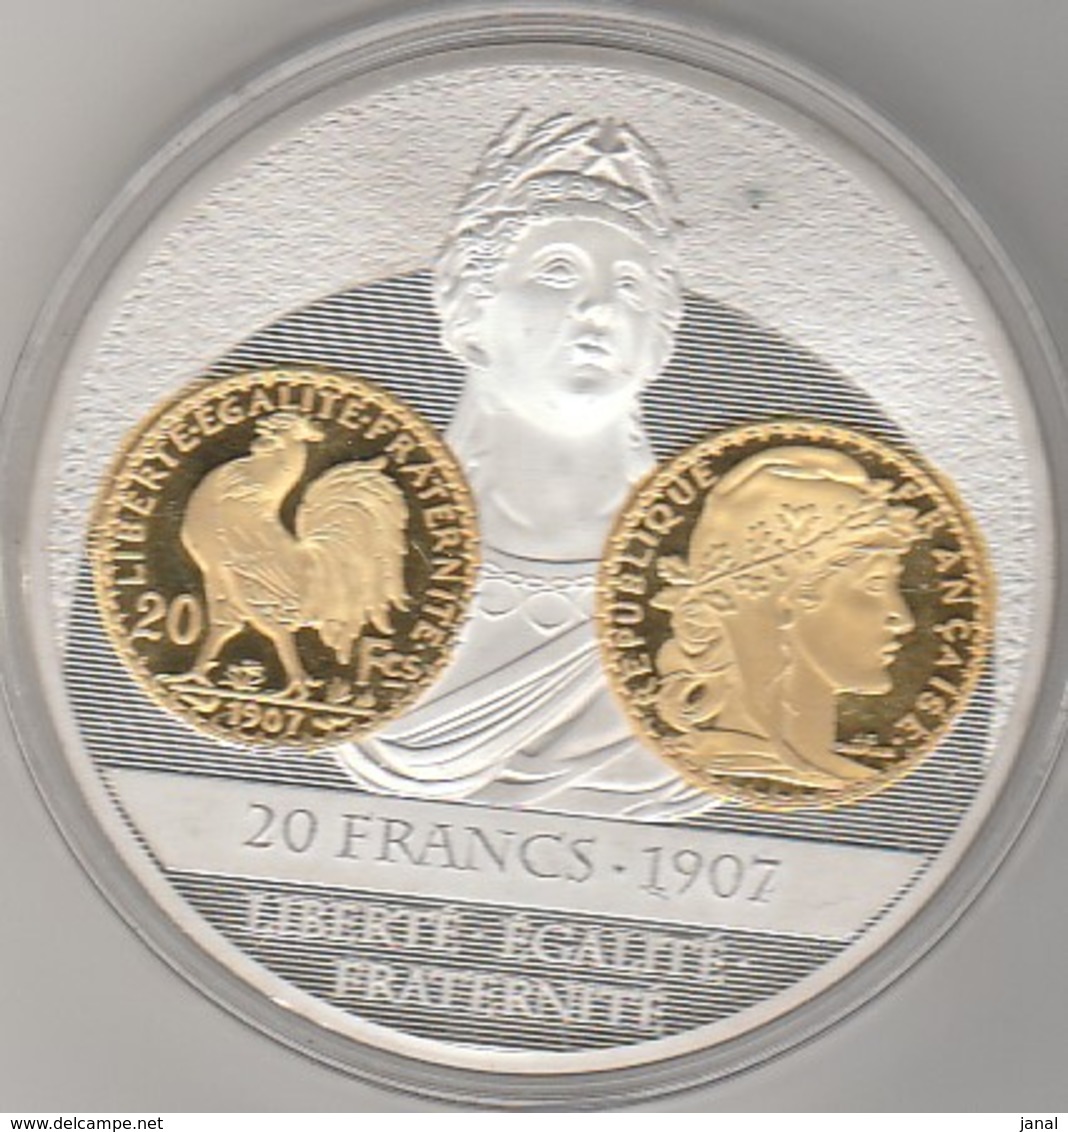 Histoire De La Monnaie - 20 Francs 1807 - 20 Francs 1907 - Très Bon état - 2 Pieces - - Commémoratives